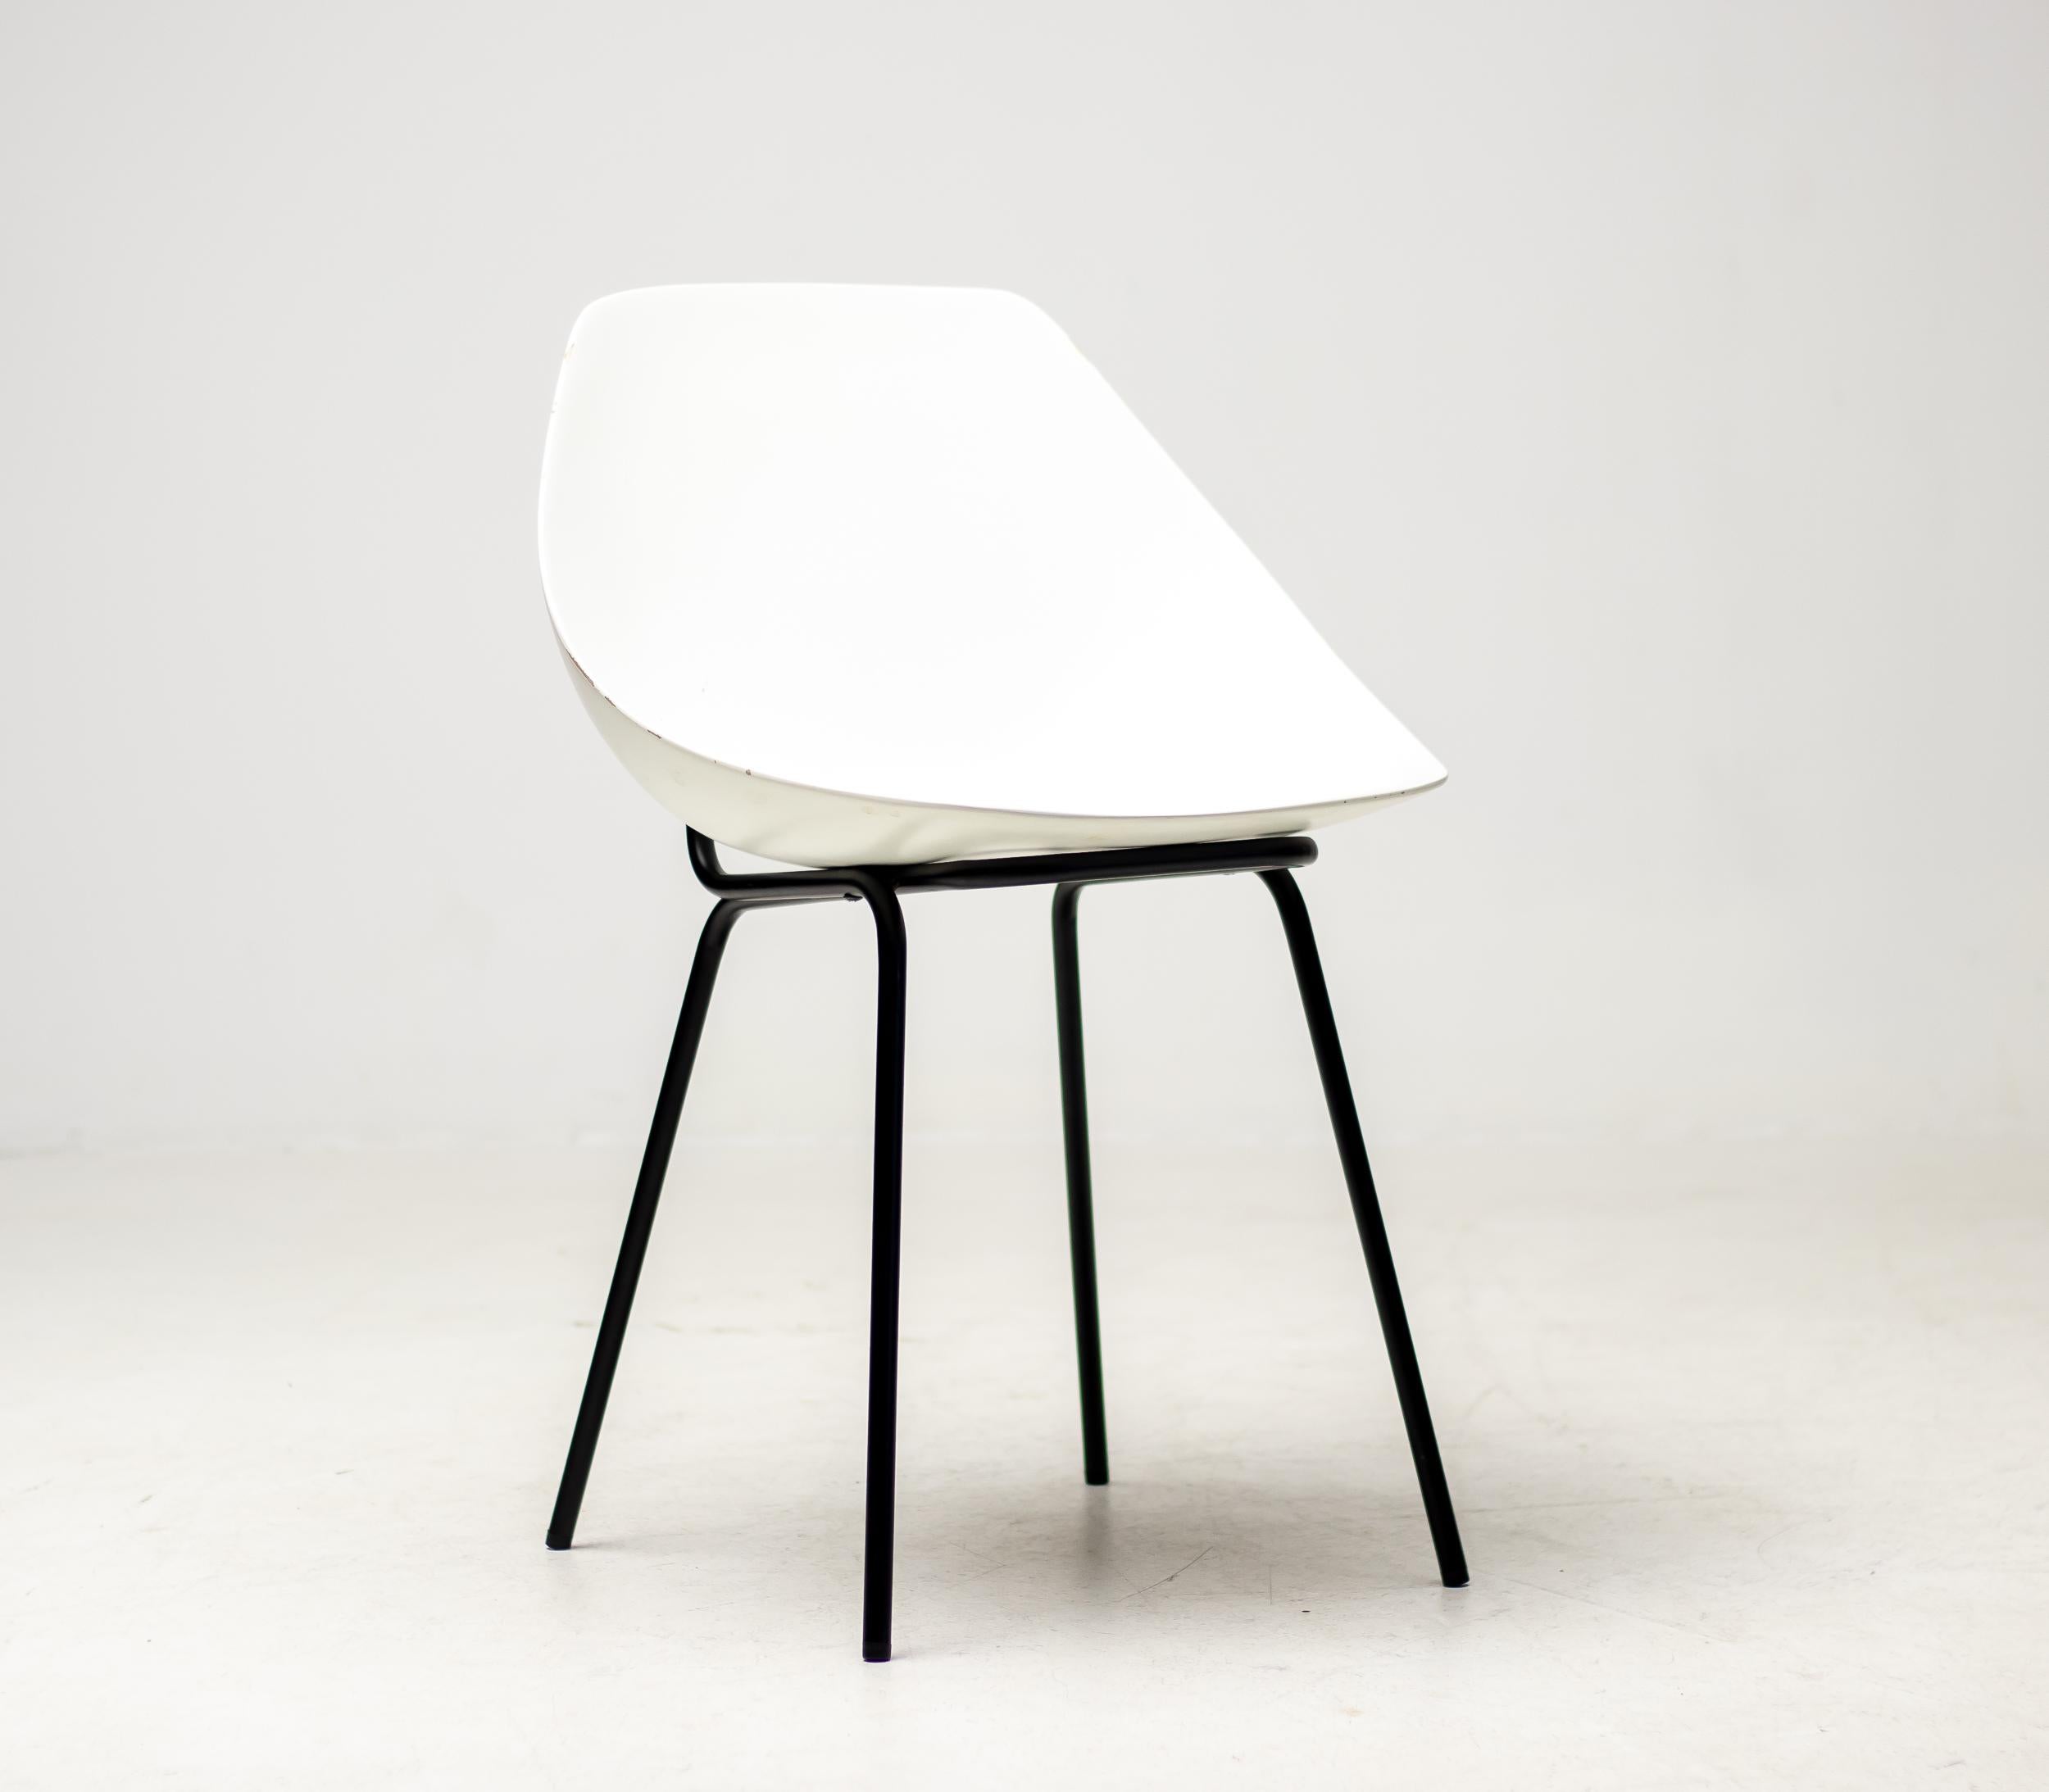 Weiße Schalenstühle aus Fiberglas, entworfen in den 1950er Jahren von Pierre Guariche.
Für eine kurze Zeit wurde der Coquillage- oder Scallop-Stuhl von Maisons du Monde, Frankreich, wieder aufgelegt.
Jeder Stuhl ist mit der Unterschrift des